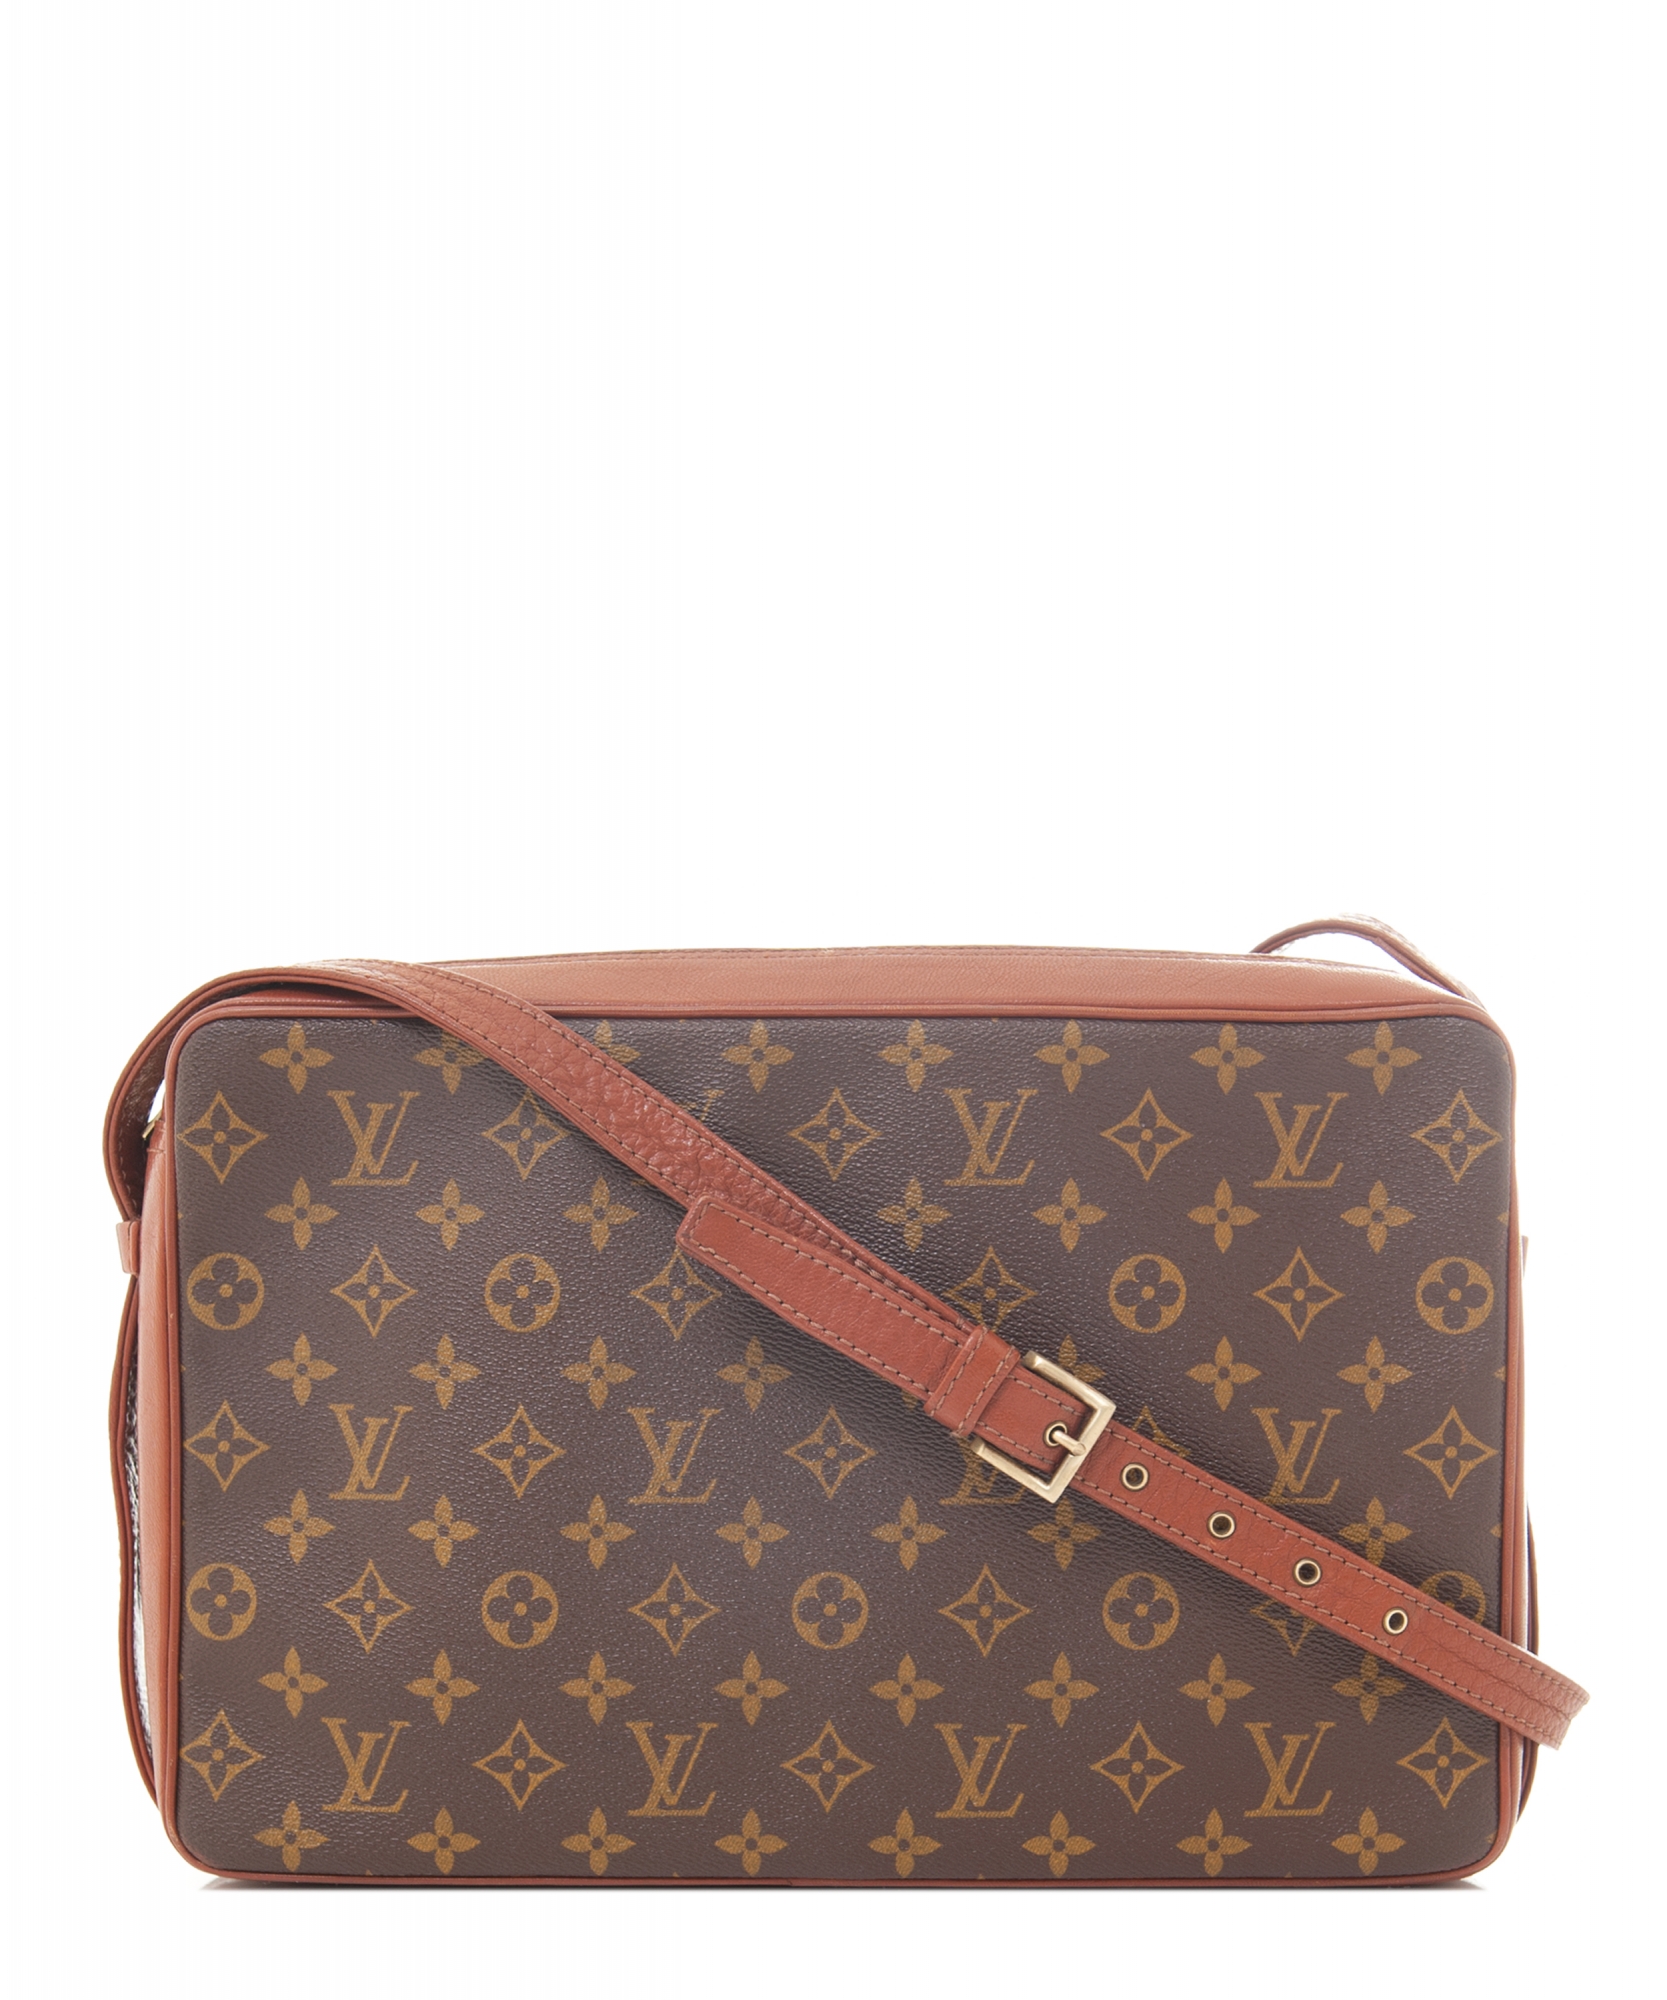 Louis 'Bandouliere Bag' in Monogram Canvas Louis Vuitton |